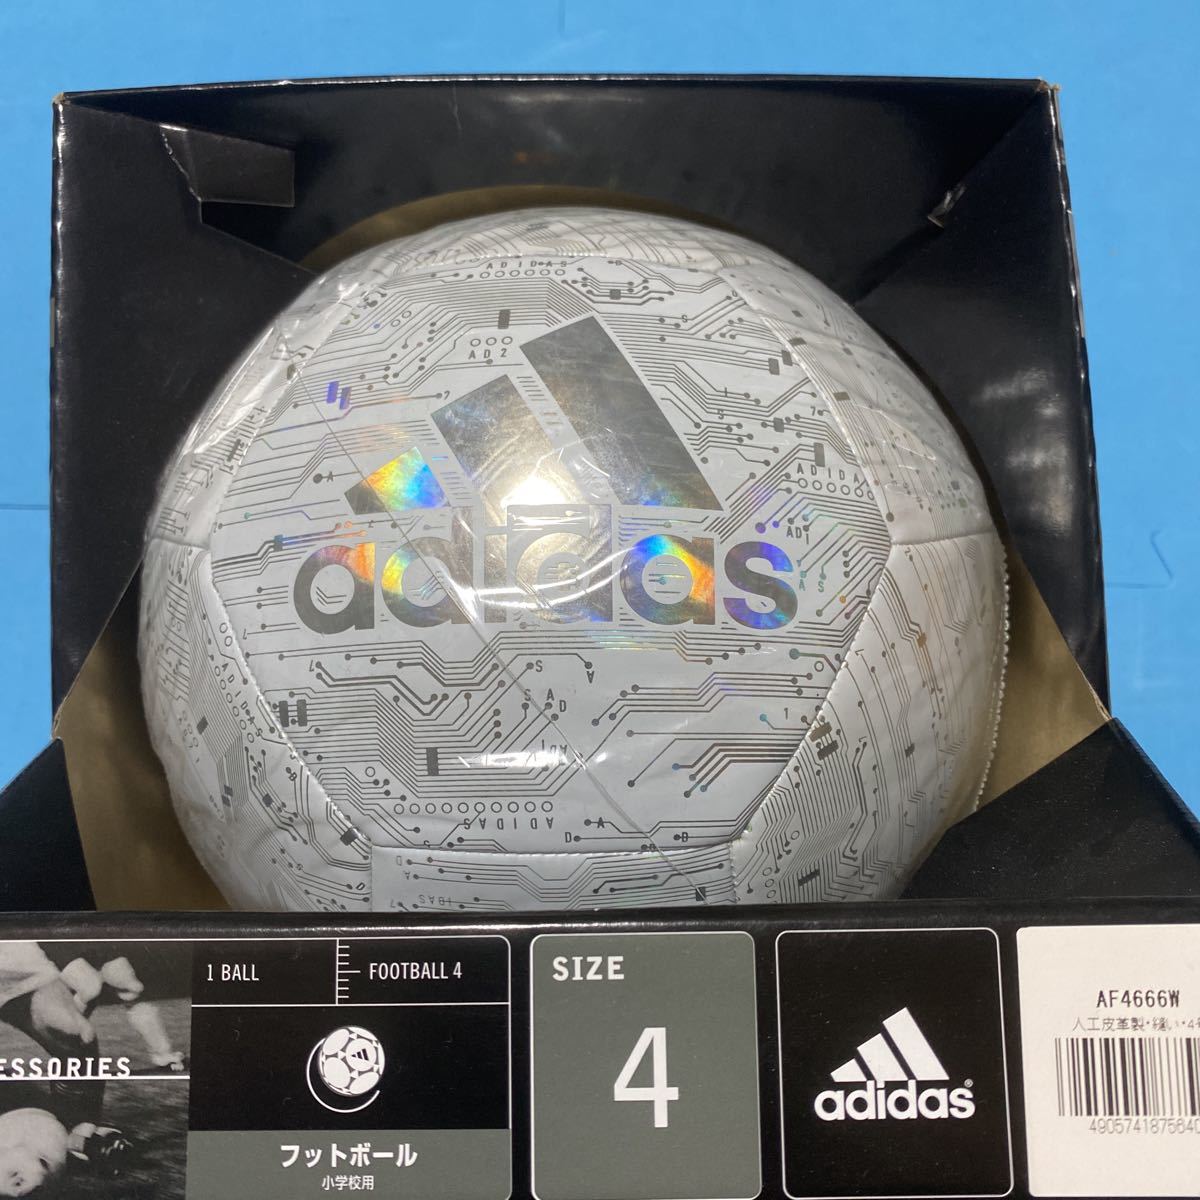 Новый футбольный мяч adidas № 4 Adidas Soccerball Game Ball Matchball Replica Club вход в белое серебро для начальной школы